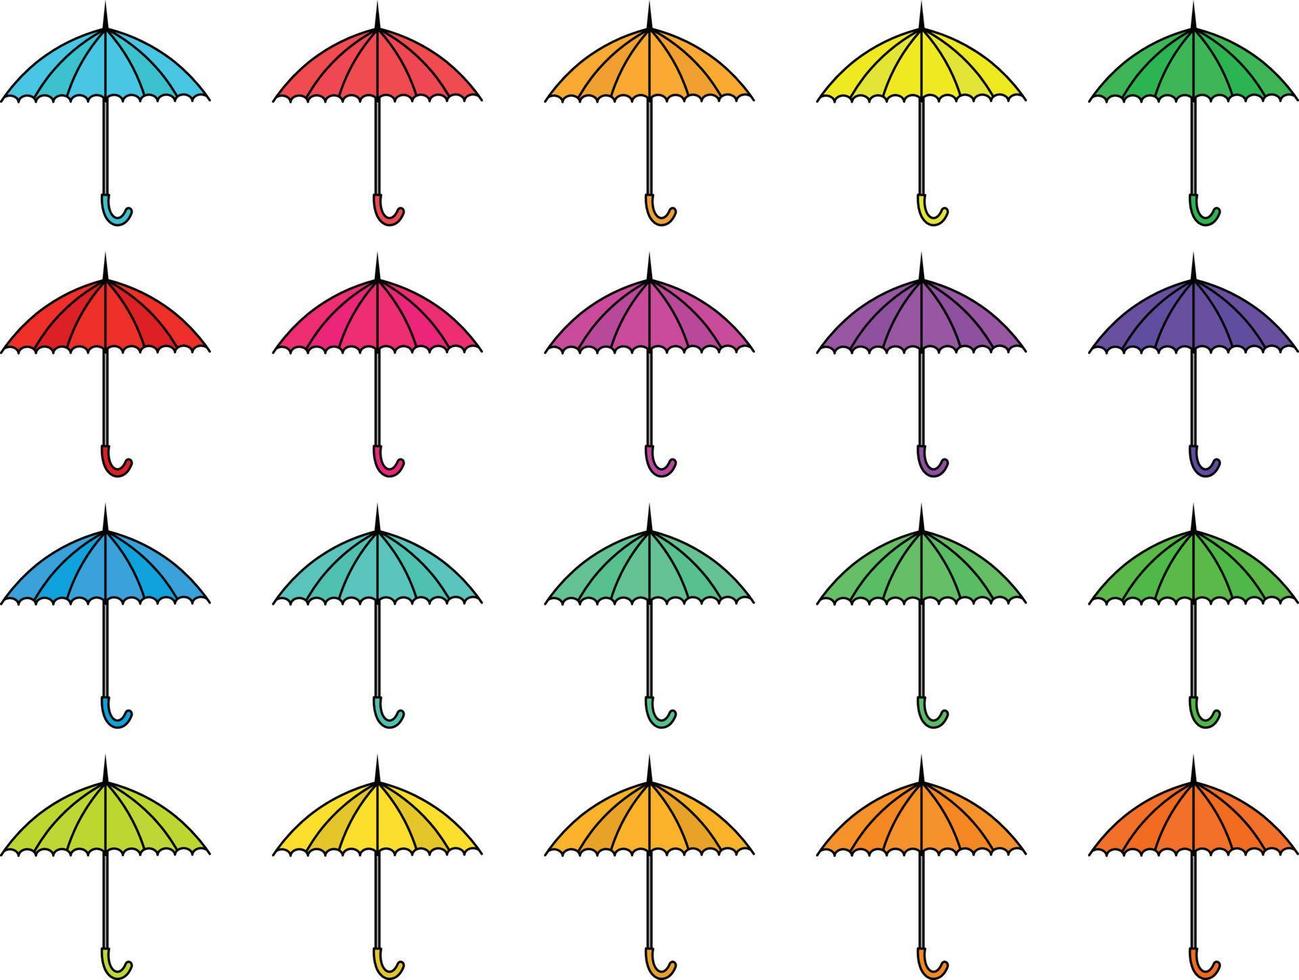 kleurrijke illustraties van paraplu. plat ontwerp van paraplu. vector illustratie set van verschillende gekleurde paraplu's.